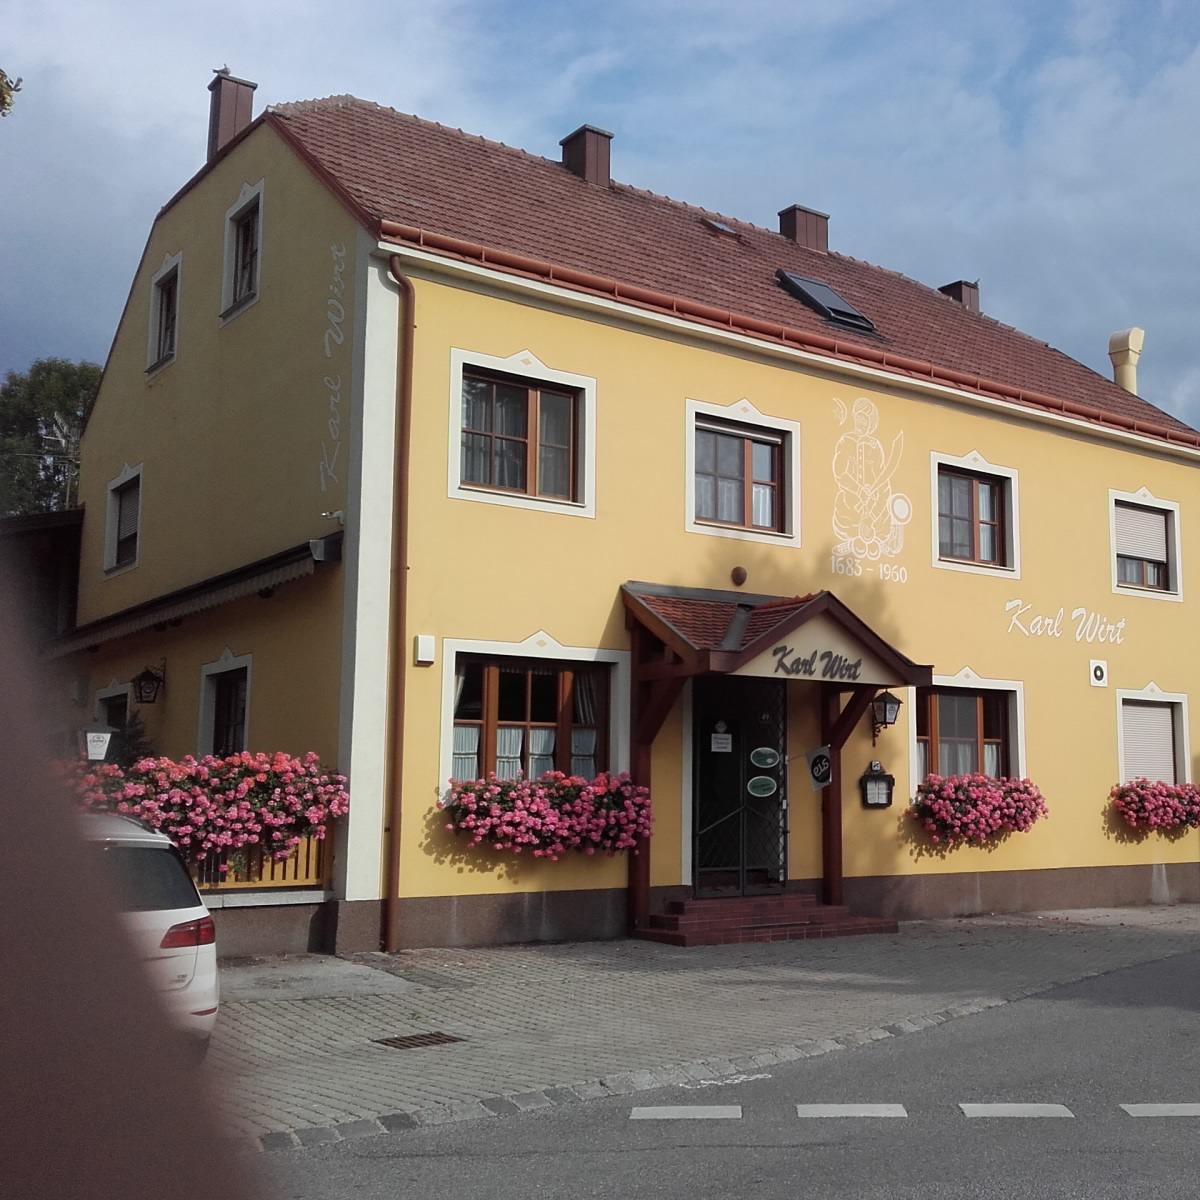 Restaurant "Karl Wirt Gasthaus - Adolf und Anna Karl" in Saubersdorf